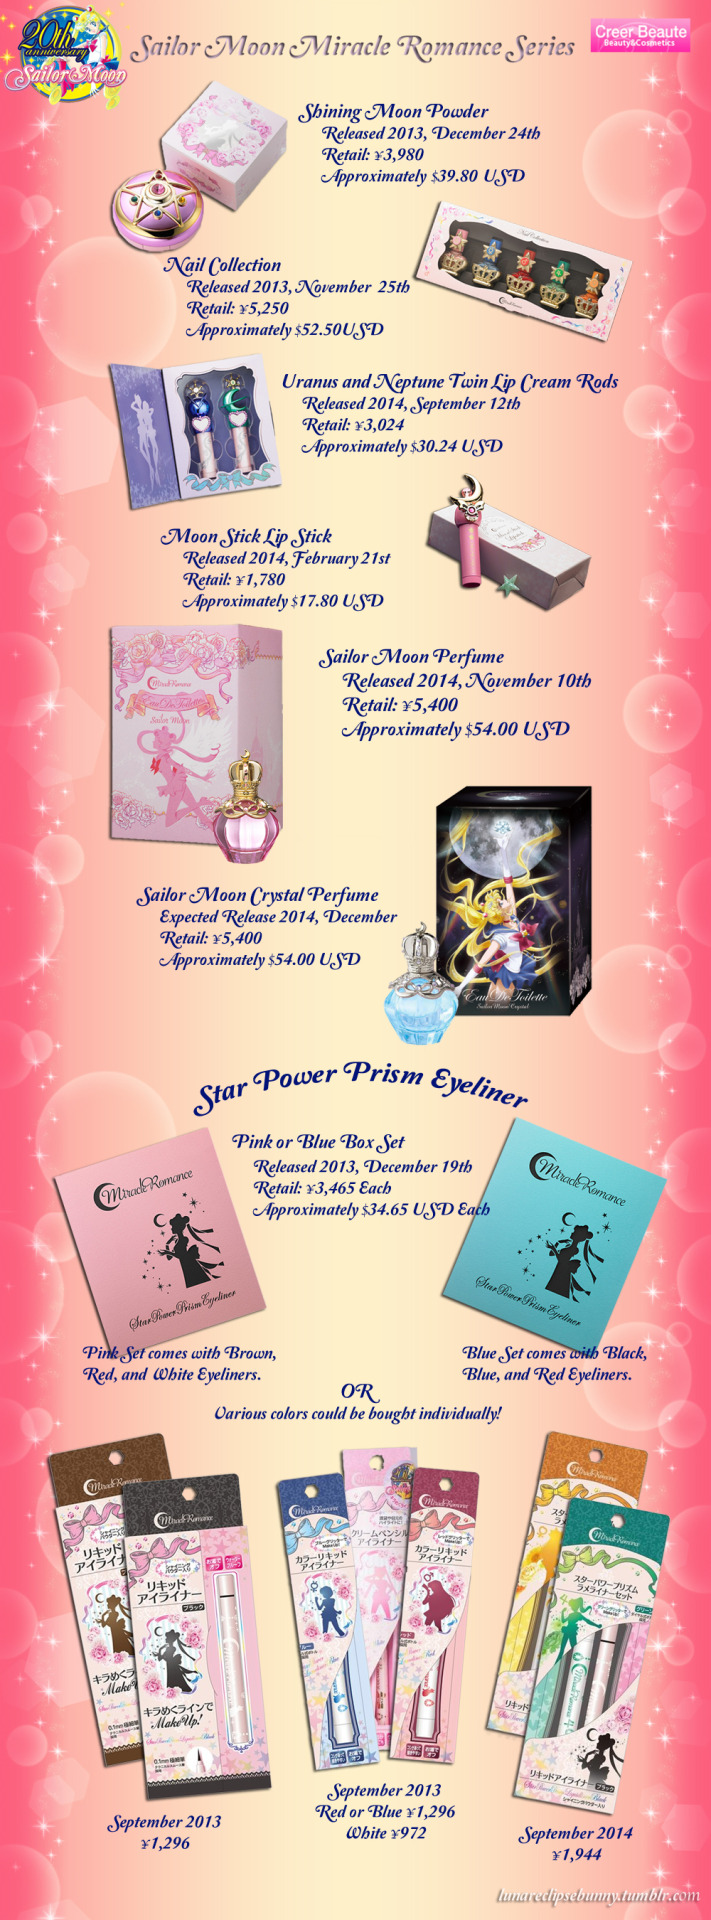 Sailor Moon Toys • Sailor Moon 20th Anniversary Miracle Romance